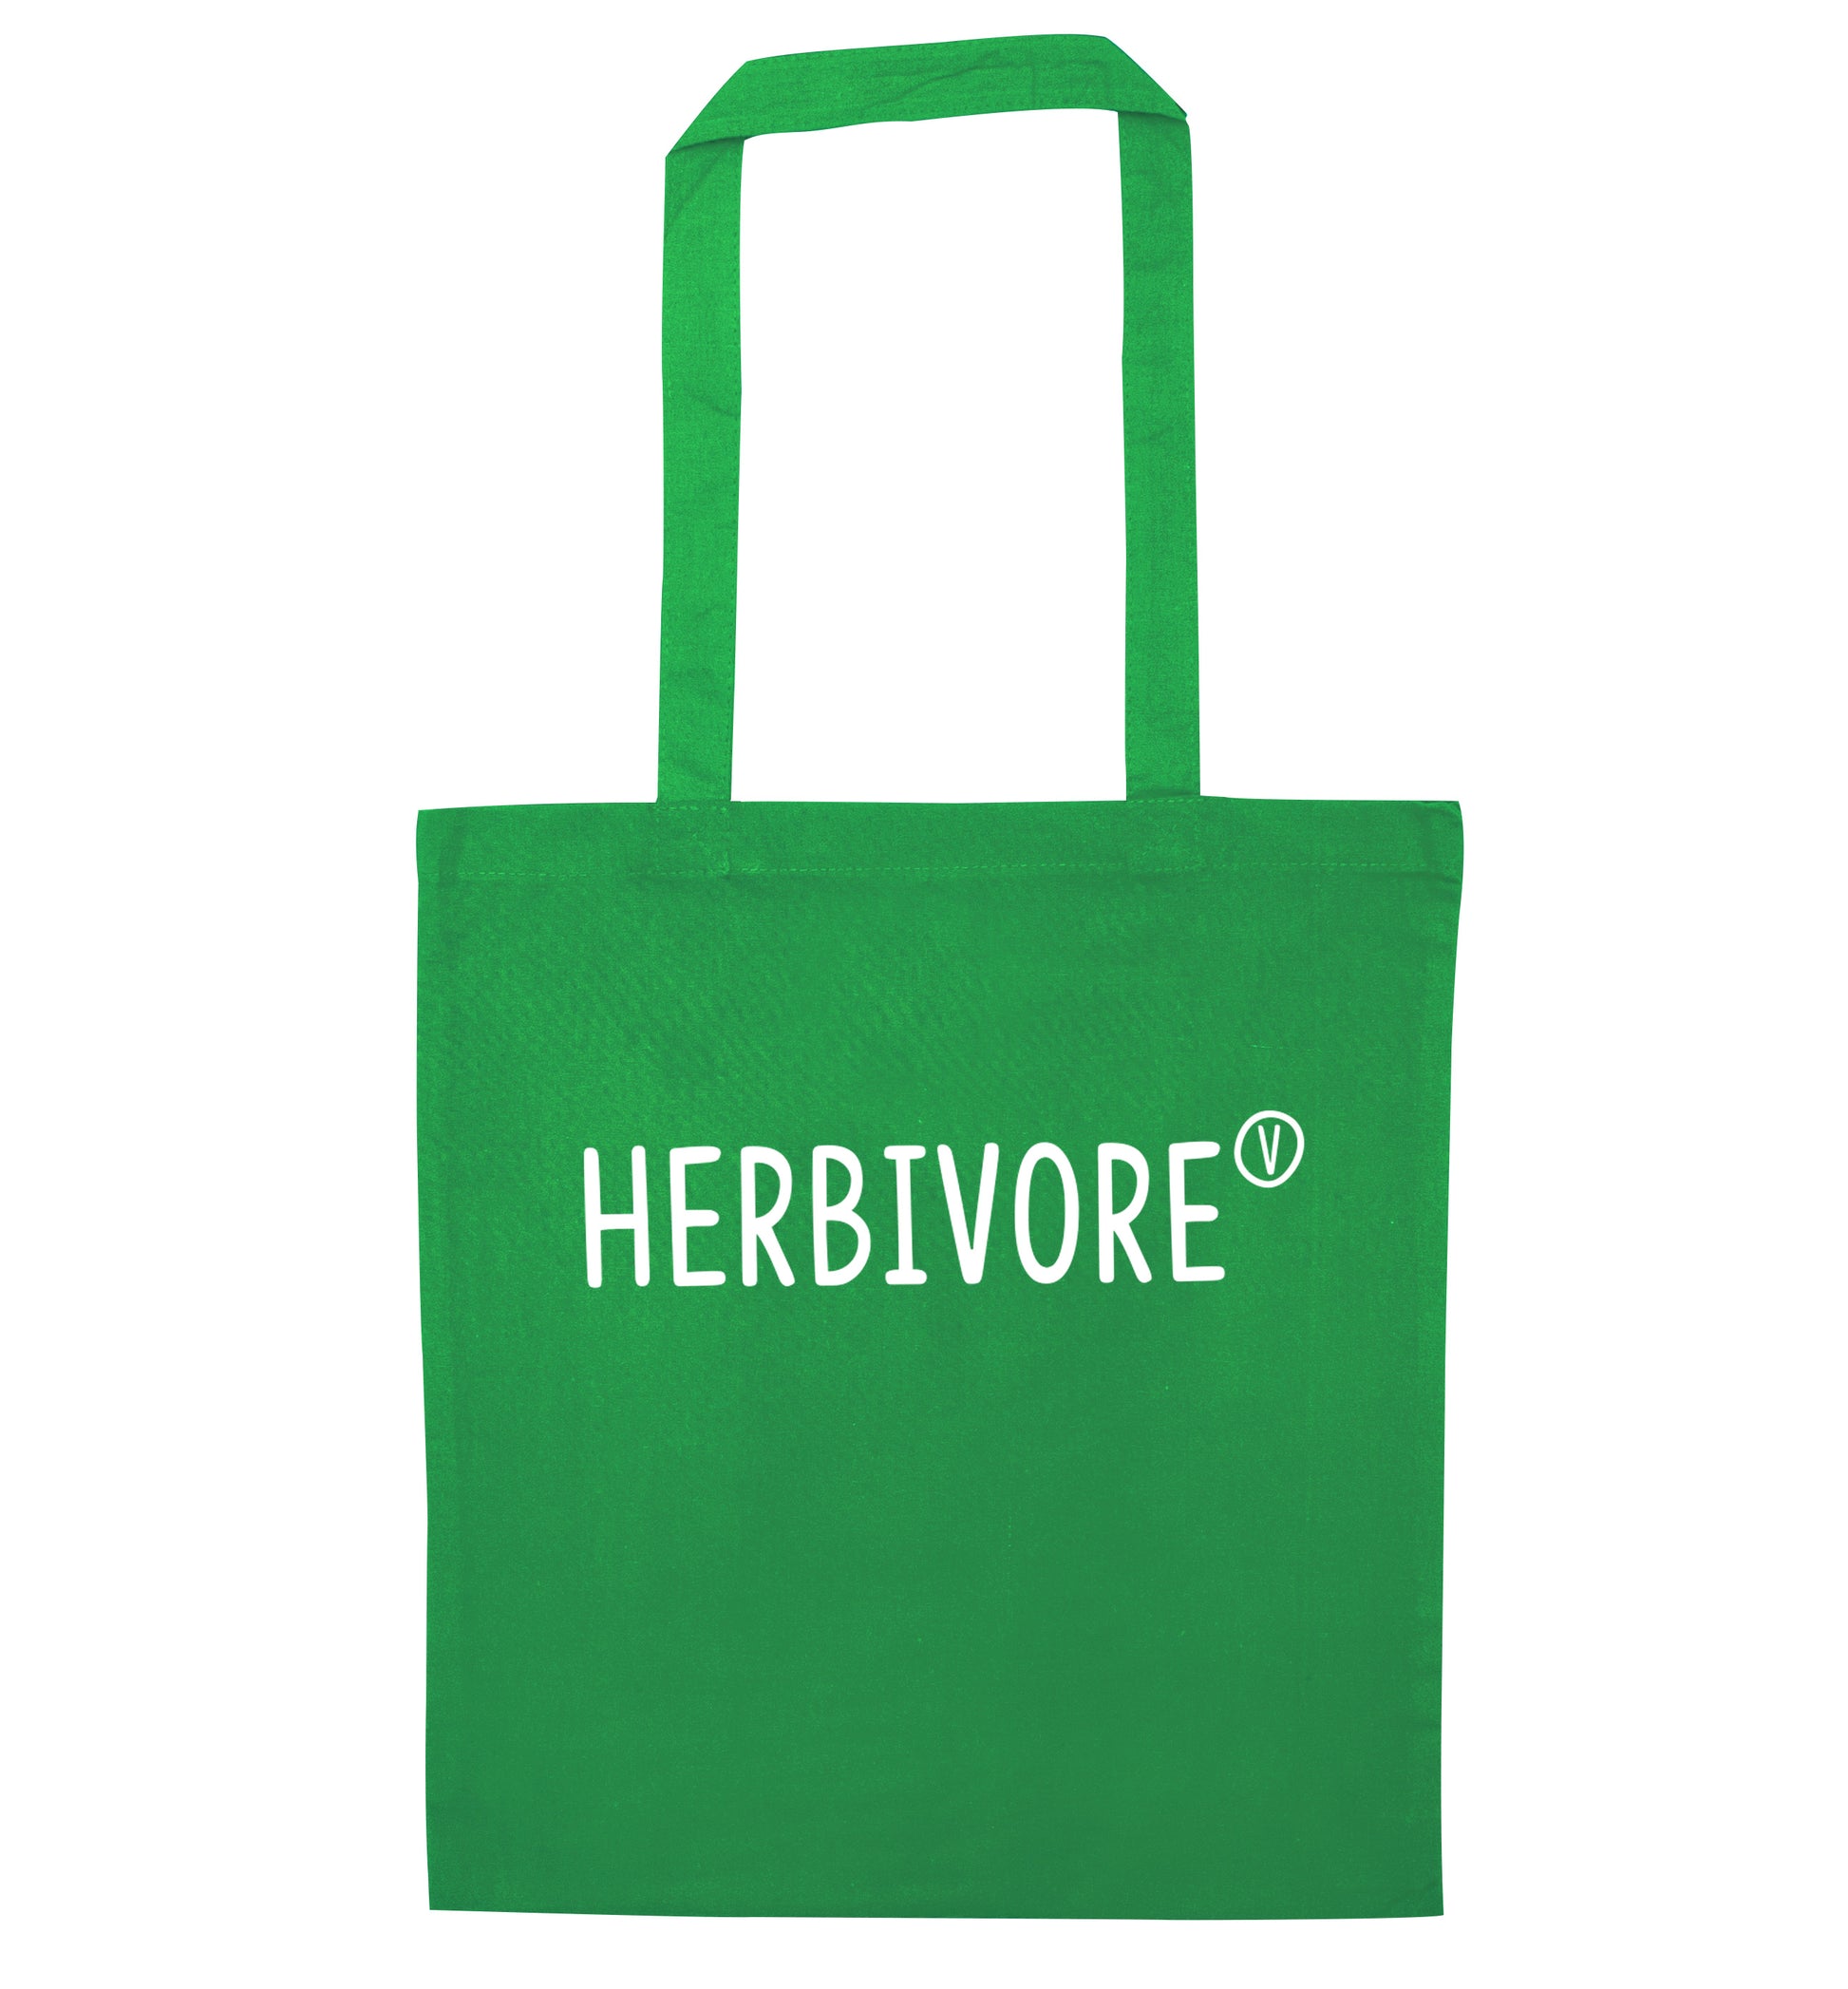 Herbivore green tote bag